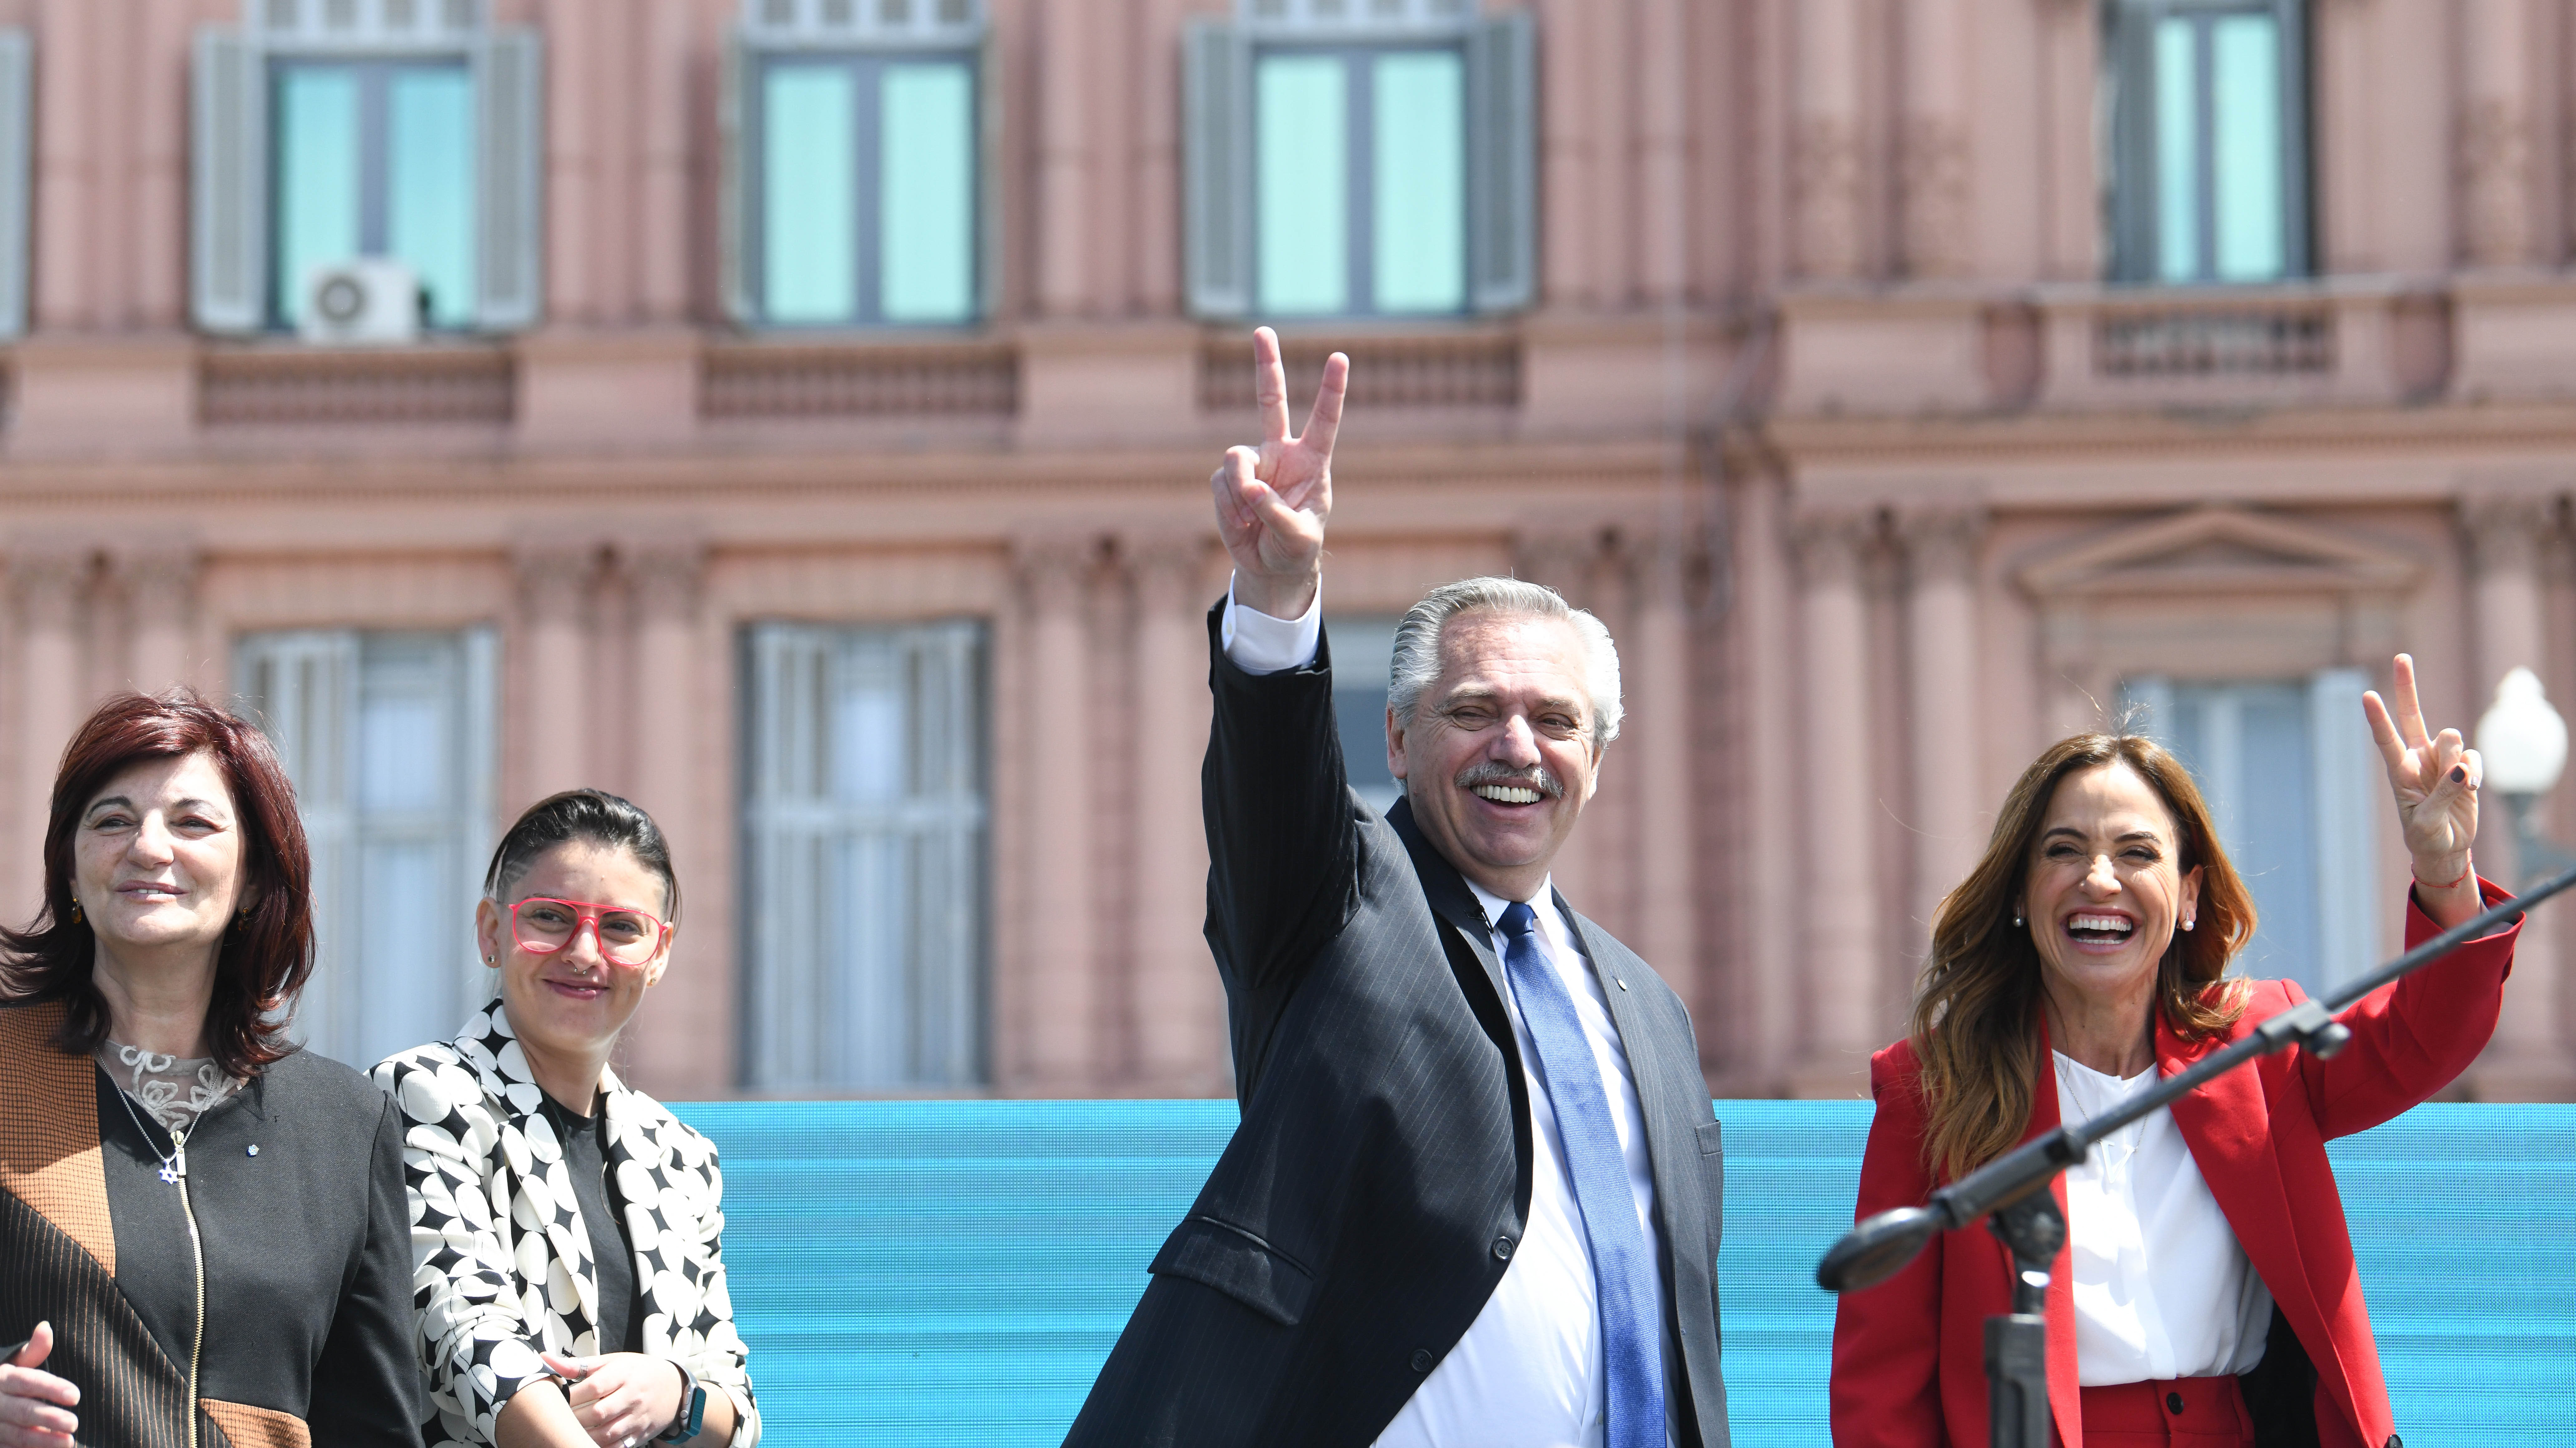 El 13 de octubre el presidente Alberto Fernández le tomó juramento a Victoria Tolosa Paz como nueva ministra de Desarrollo Social en lugar de Juan Zabaleta